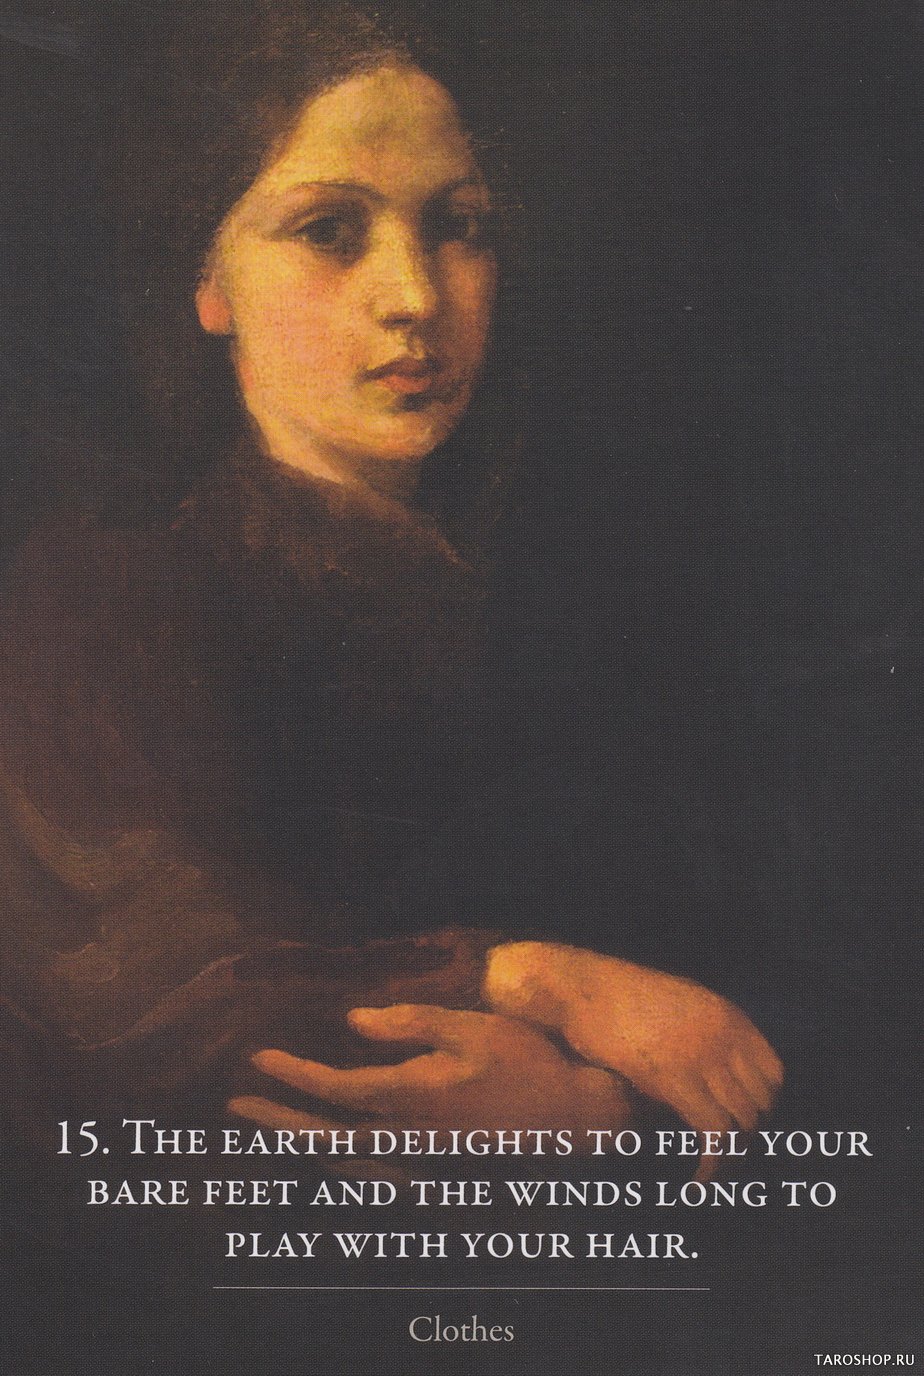 Kahlil Gibran's The Prophet Oracle. Оракул "Пророк" Халила Джебрана